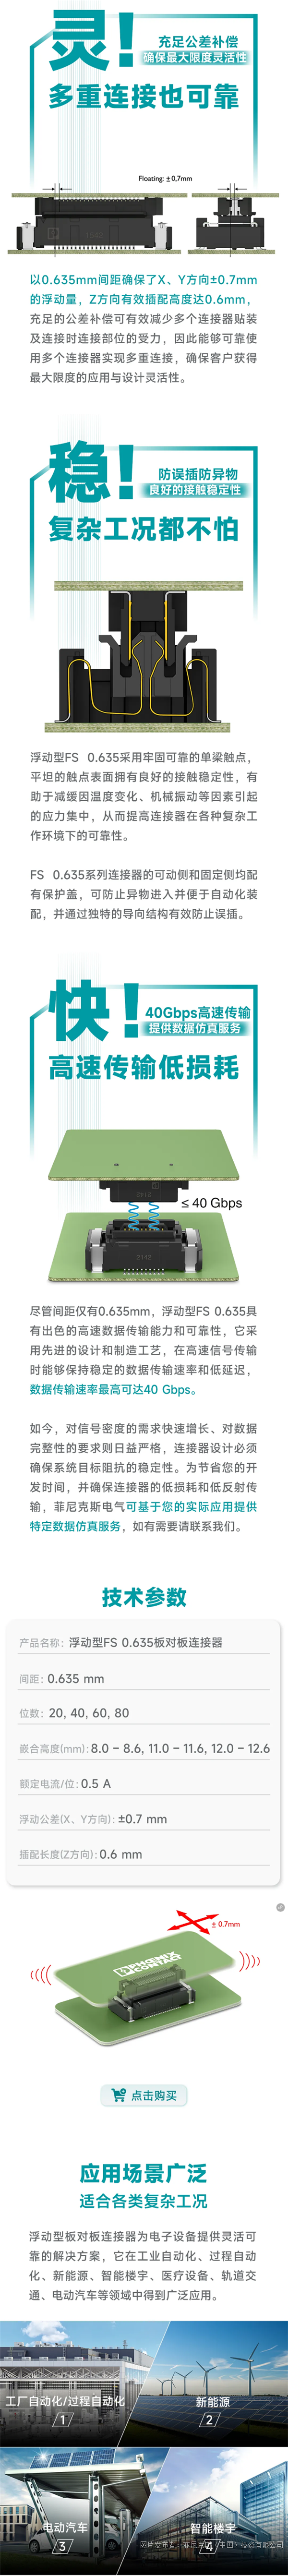 新品速递 _ “效”傲电子连接江湖 还看浮动型FS 0.635板对板连接器.png